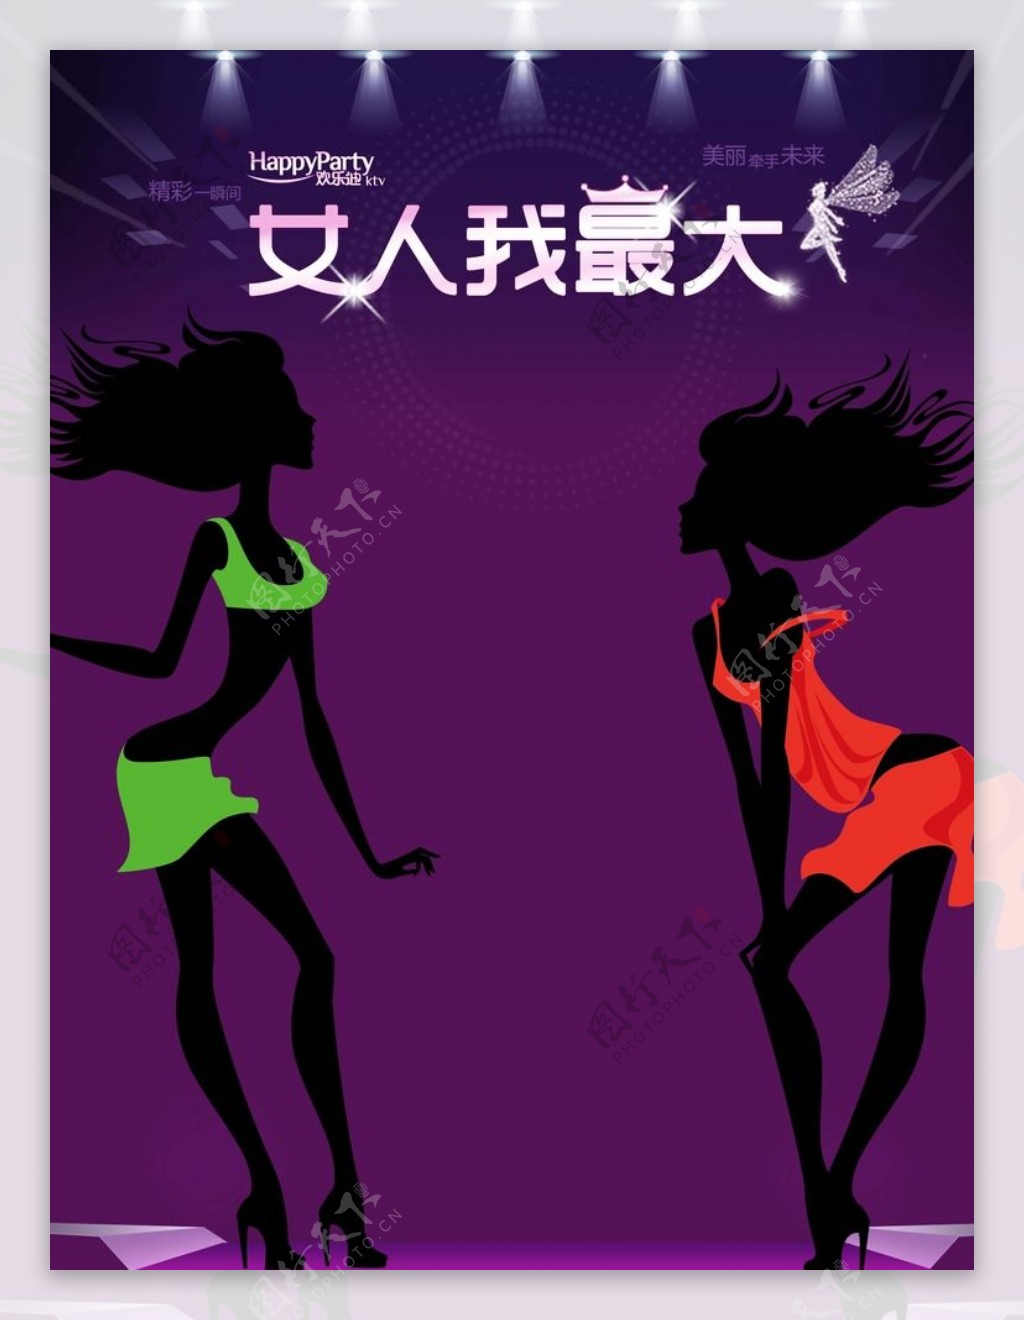 欢乐迪38女人节背景图片